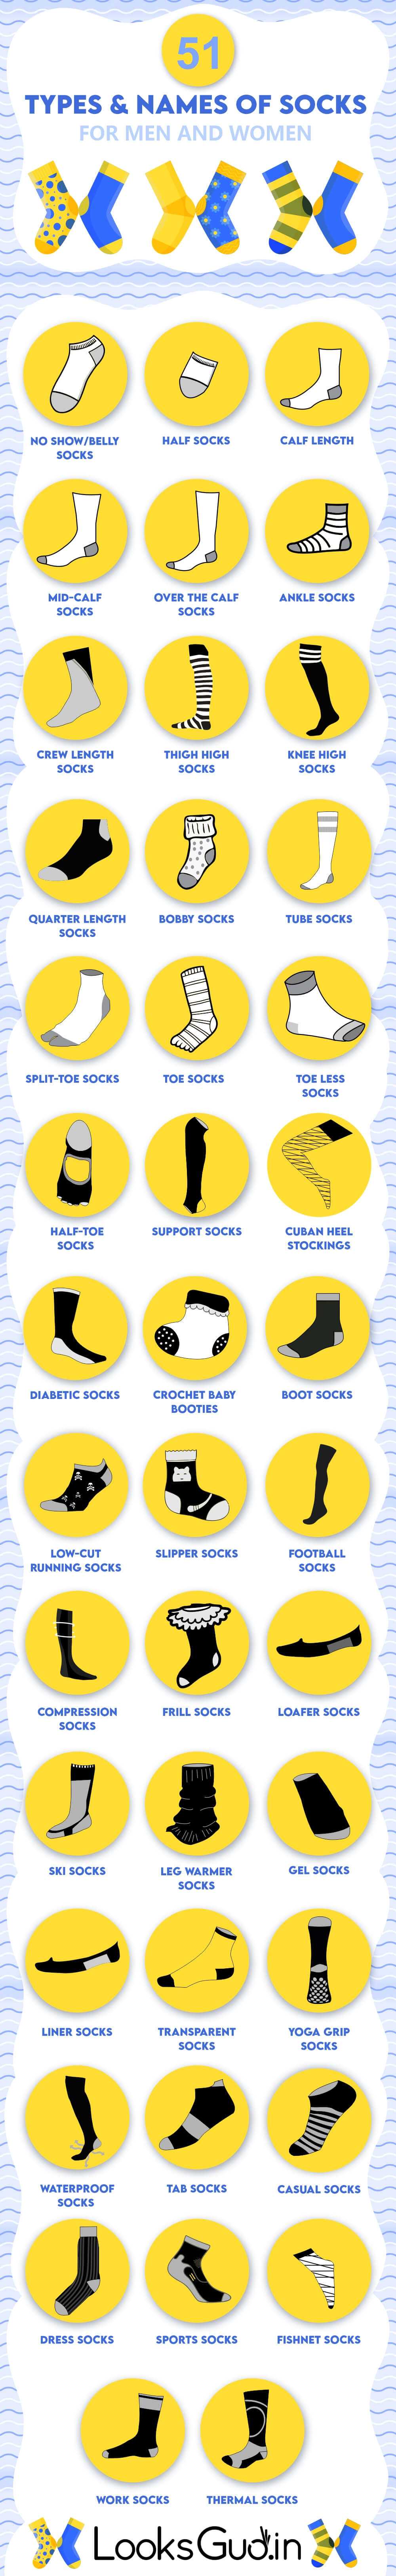 Different Types Of Socks And Their Names - Izulkafli15iskl